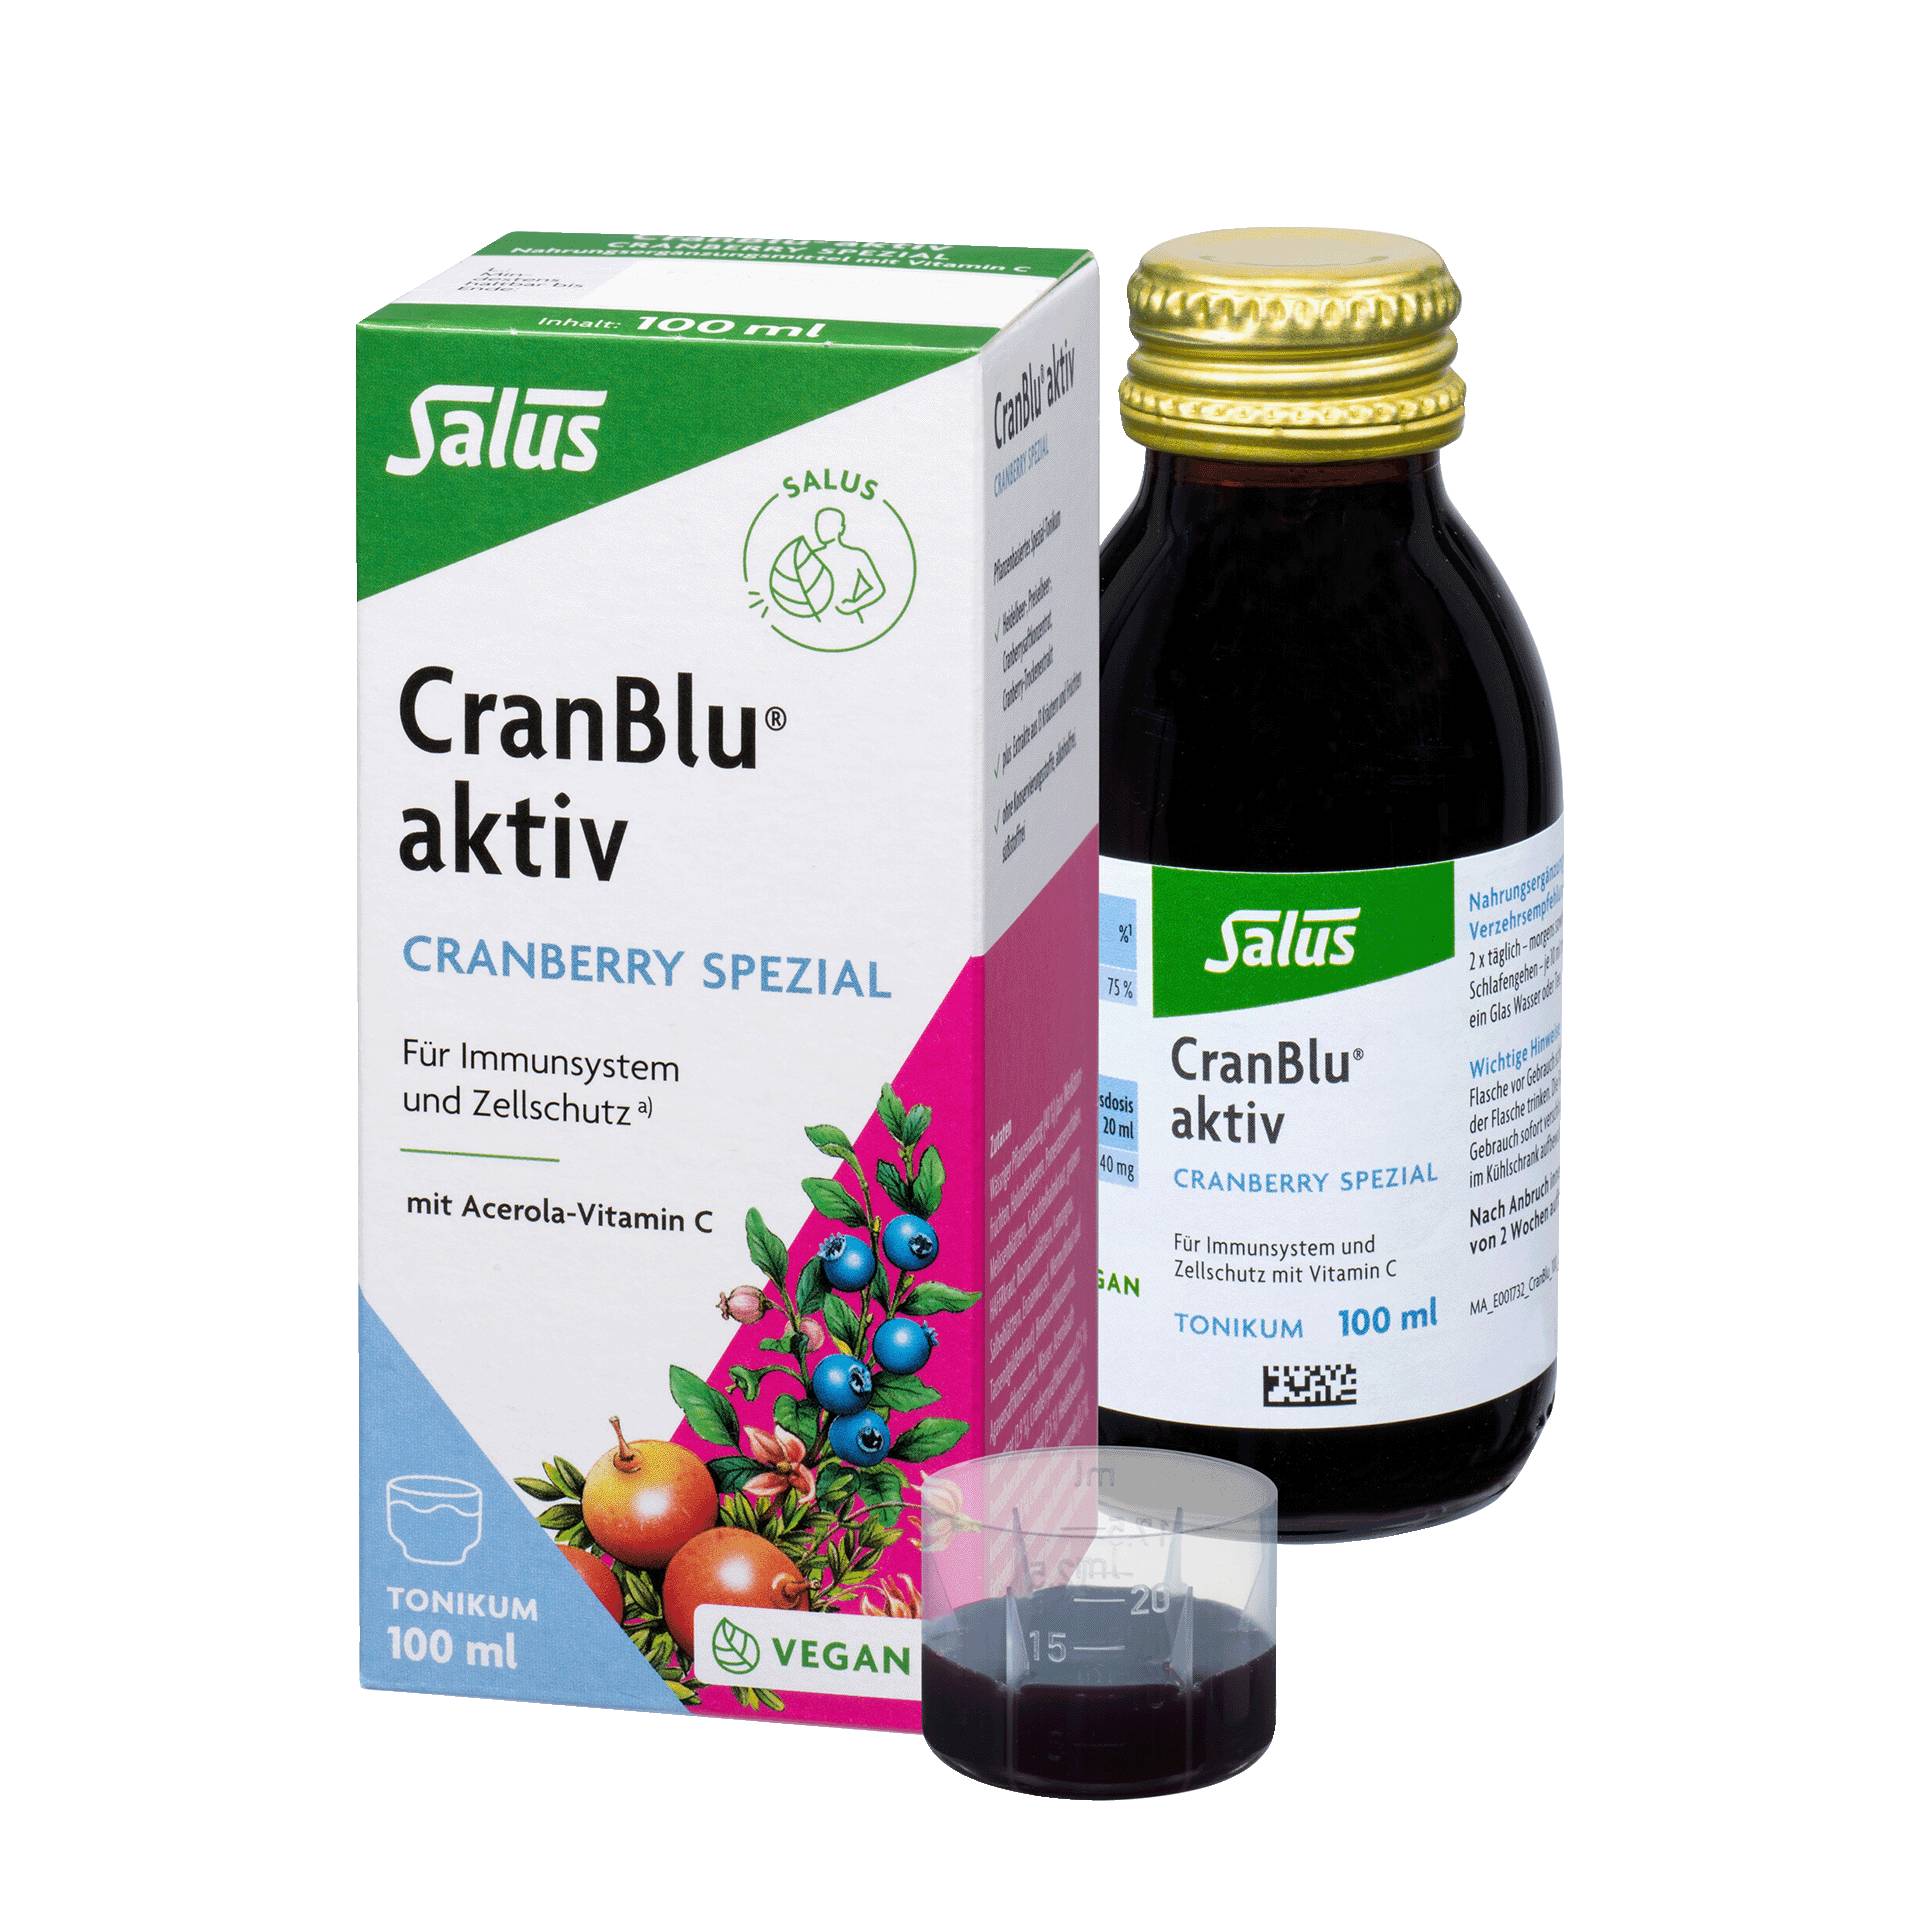 CranBlu aktiv, 100 ml von Salus